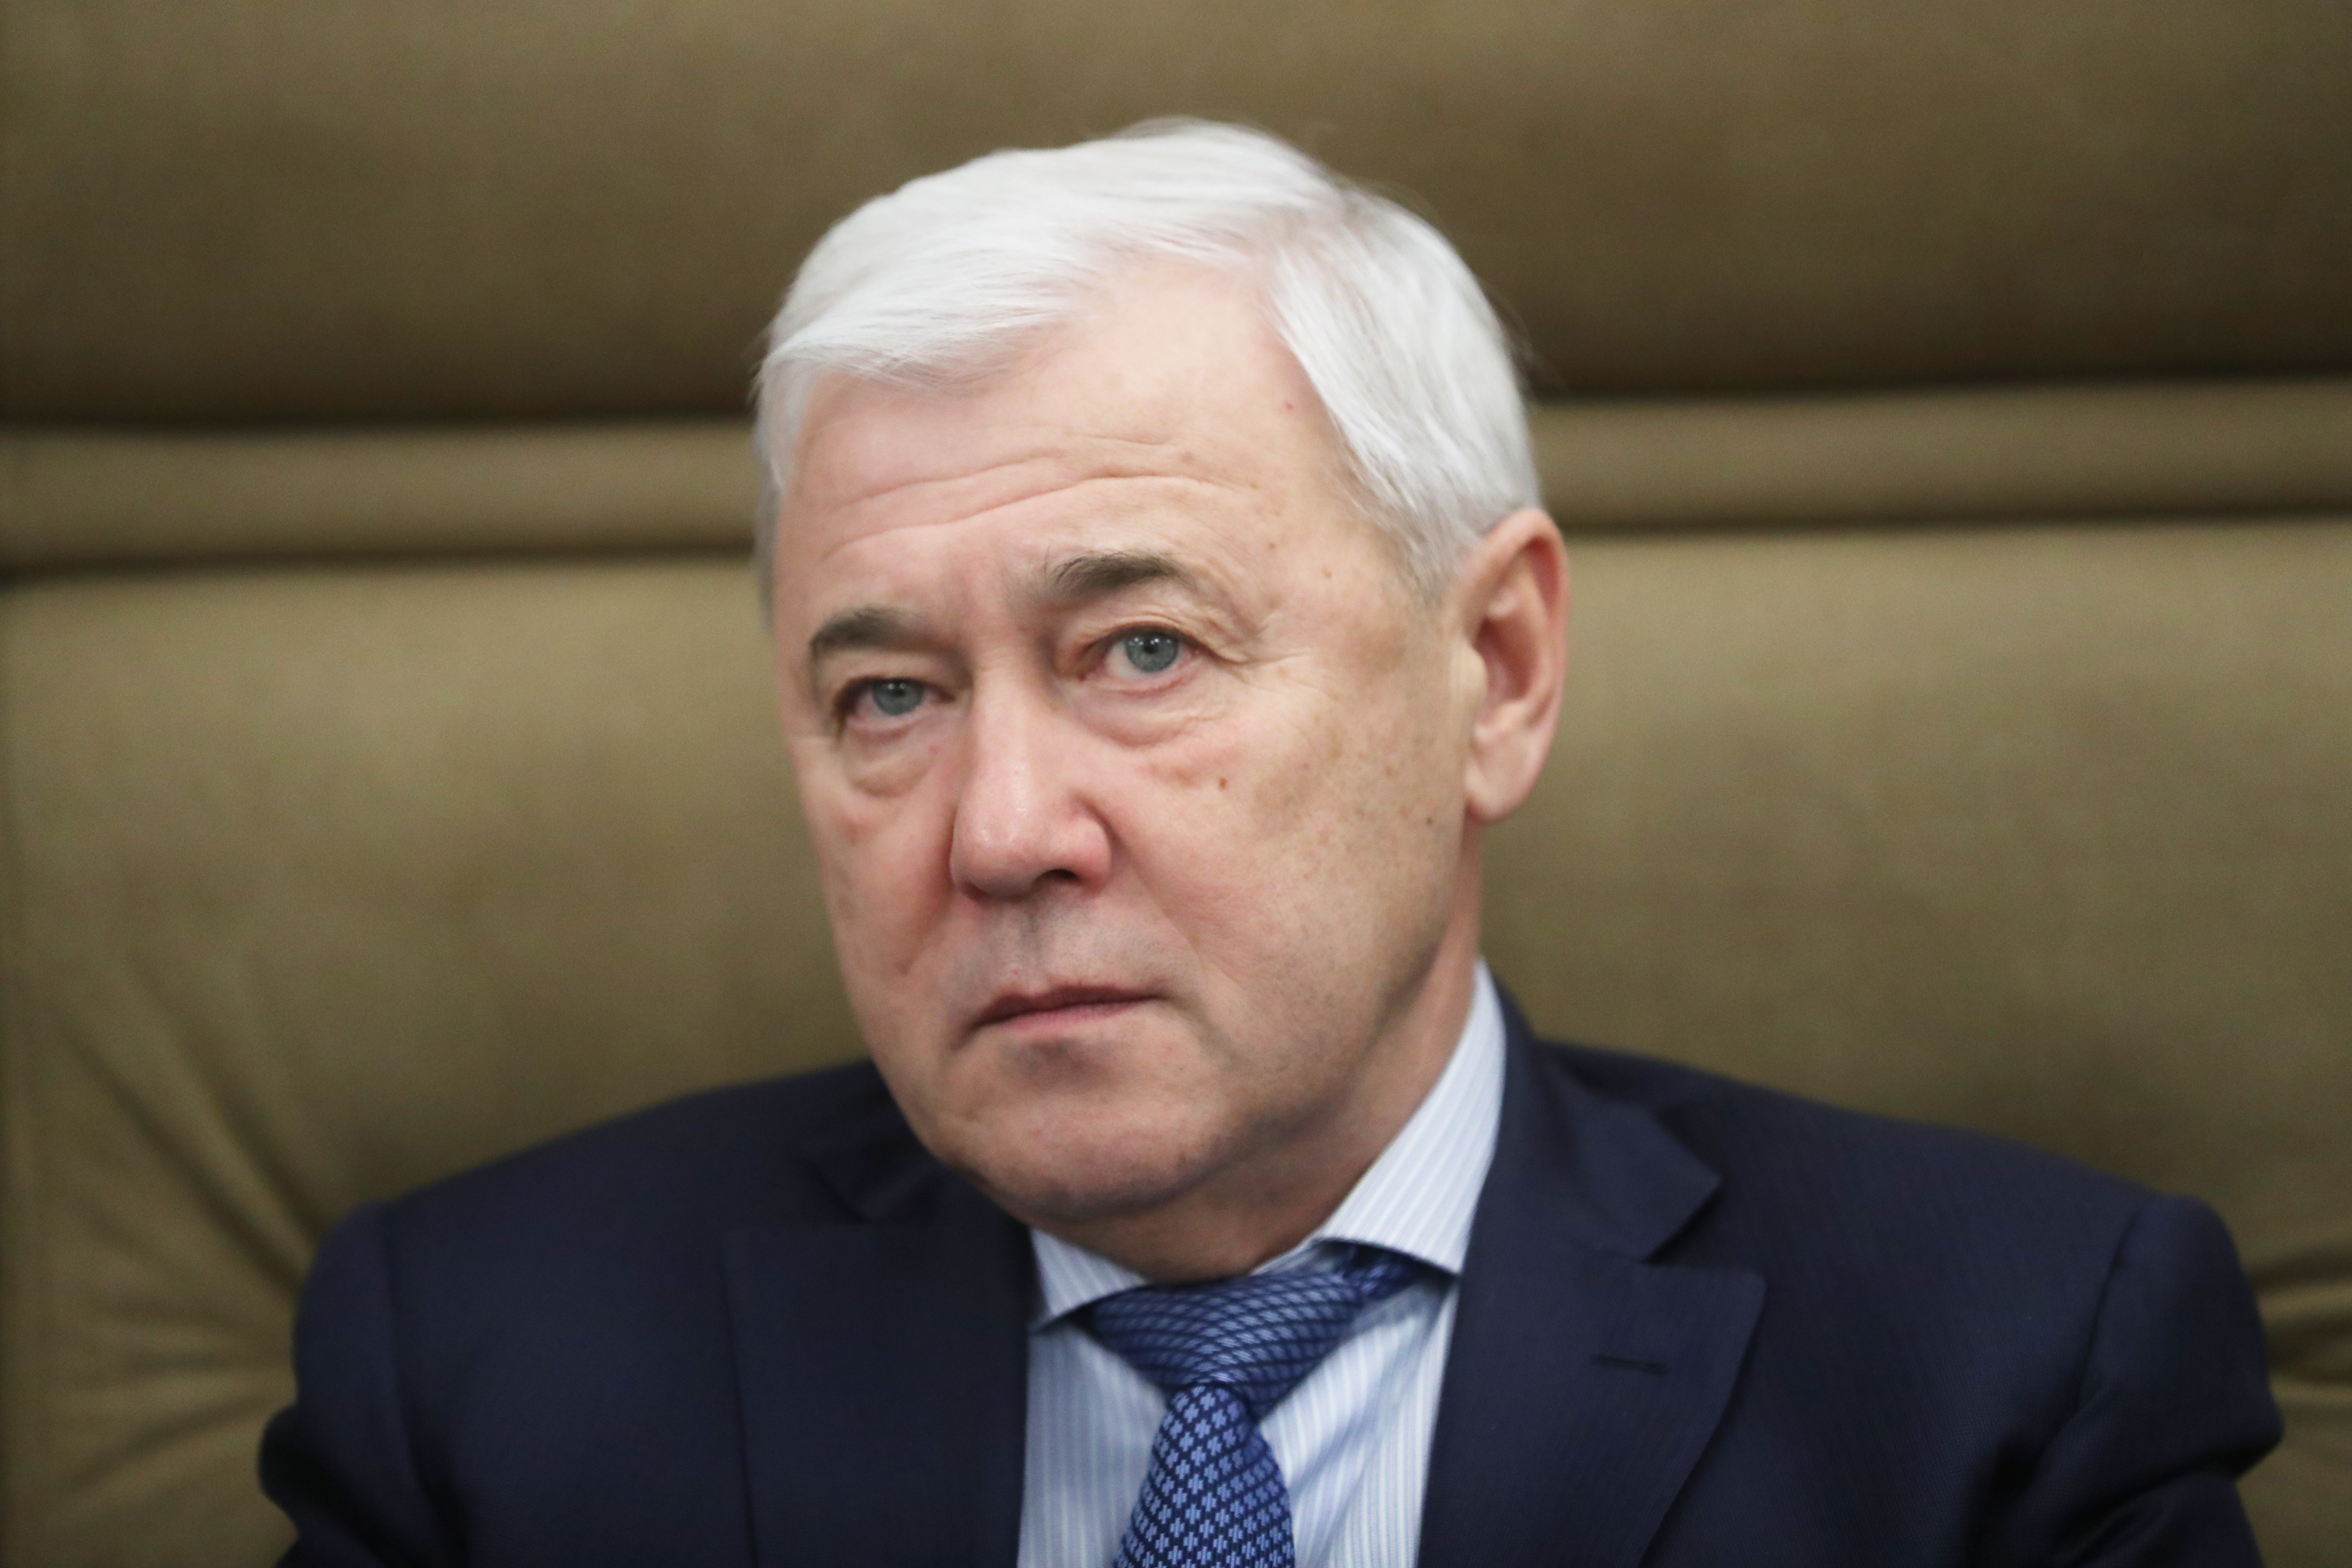  Аксаков заверил в исполнении банками обязательств перед россиянами